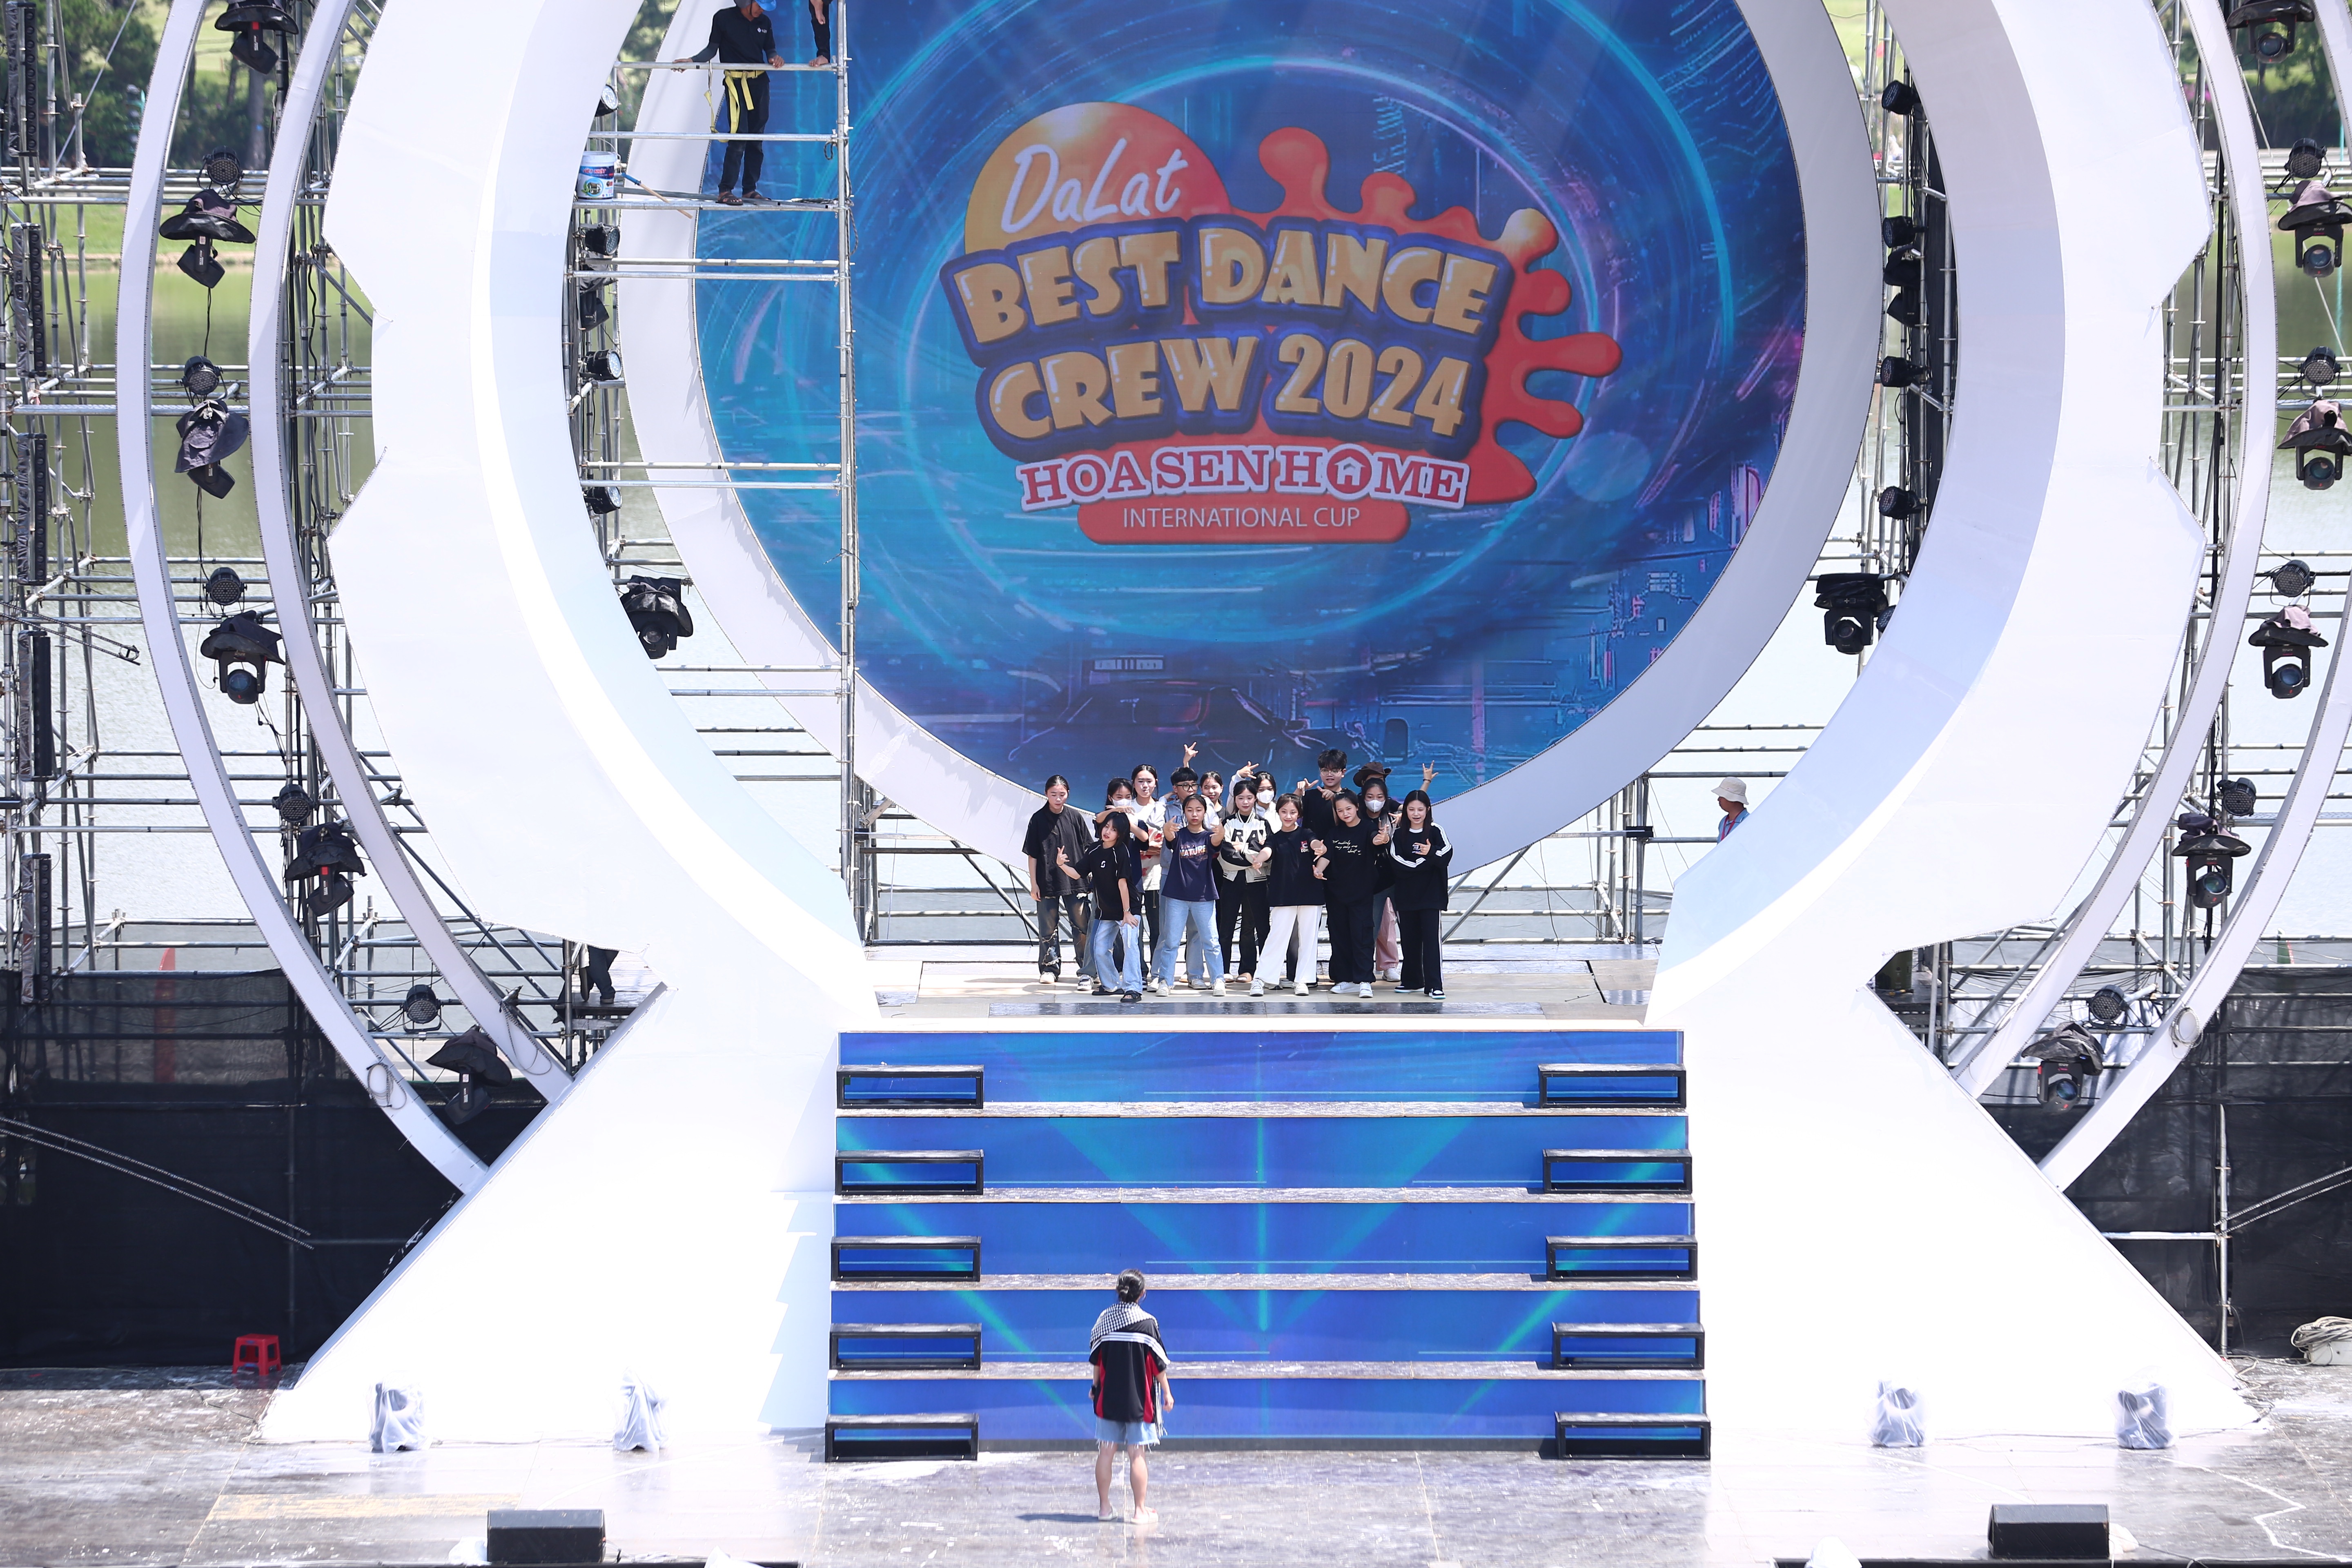 Sân khấu “Dalat Best Dance Crew 2024 – Hoa Sen Home International Cup” được đầu tư hệ thông sàn nâng hiện đại và hoành tráng chưa từng có